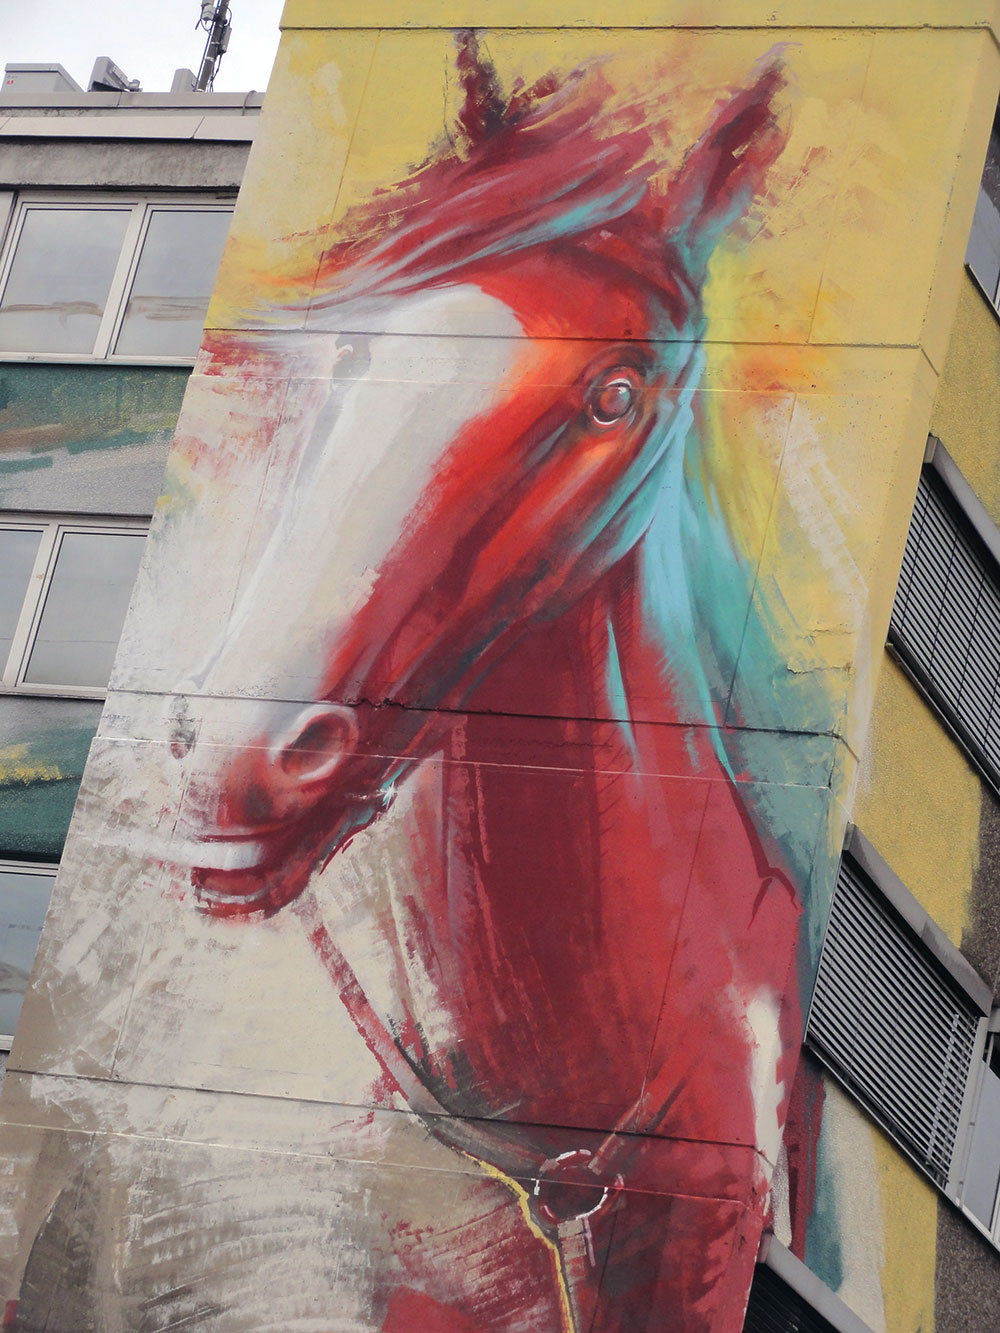 Guido Zimmermann Hausfassade Graffiti mit Cowboy, Rind und Pferd in der Hanauer Landstrasse in Frankfurt